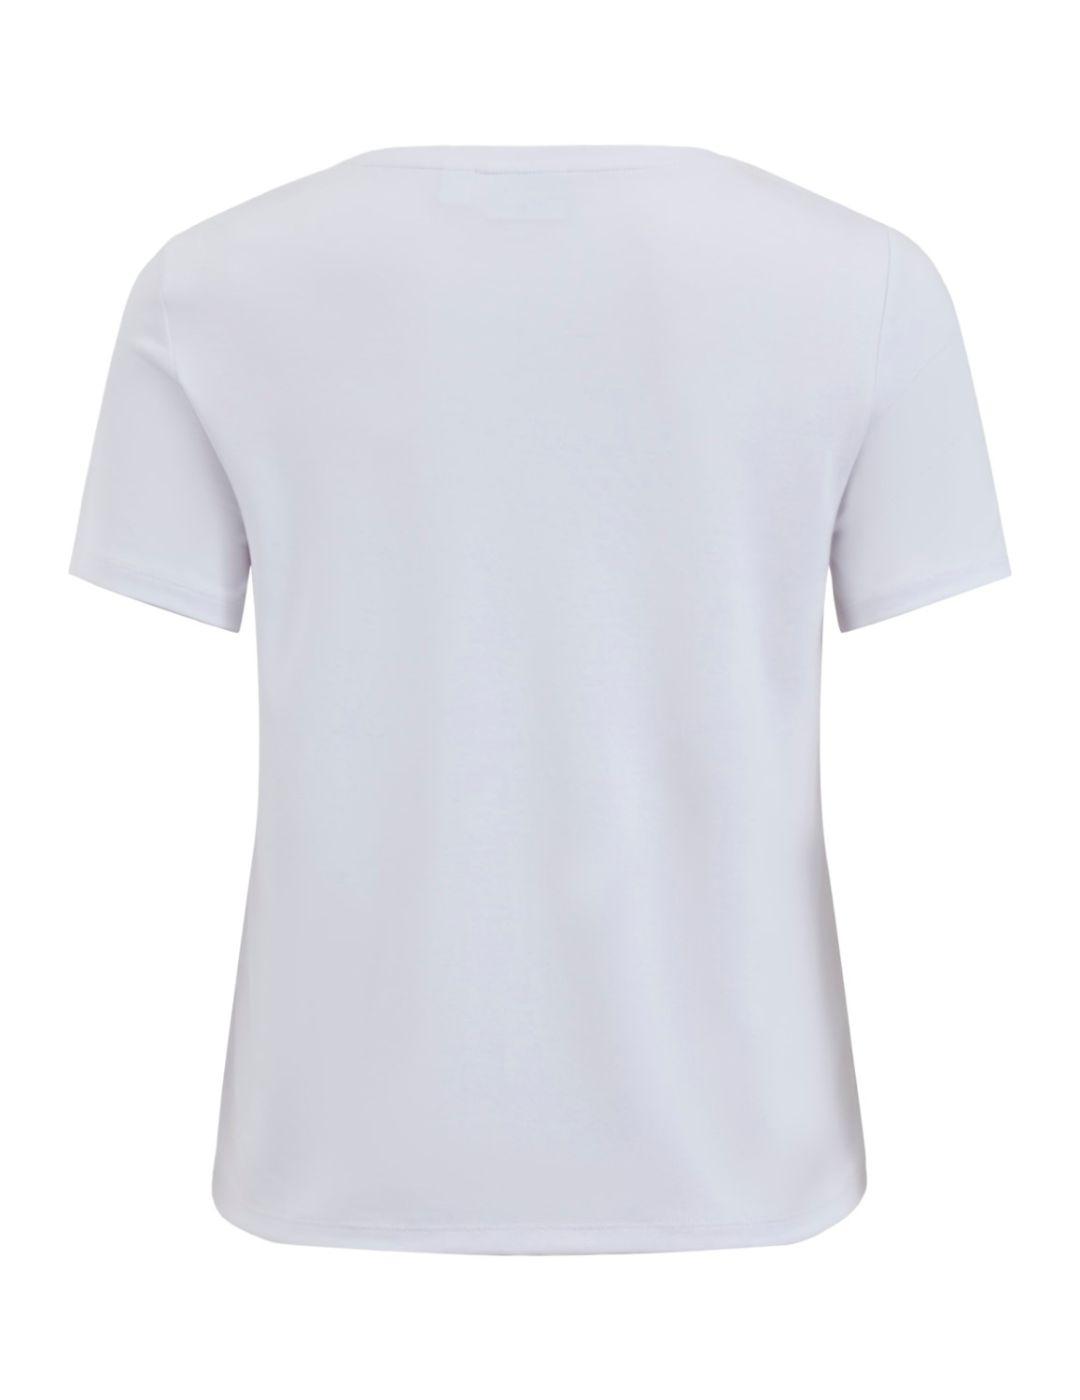 Camiseta Vila Modala blanca para mujer-b